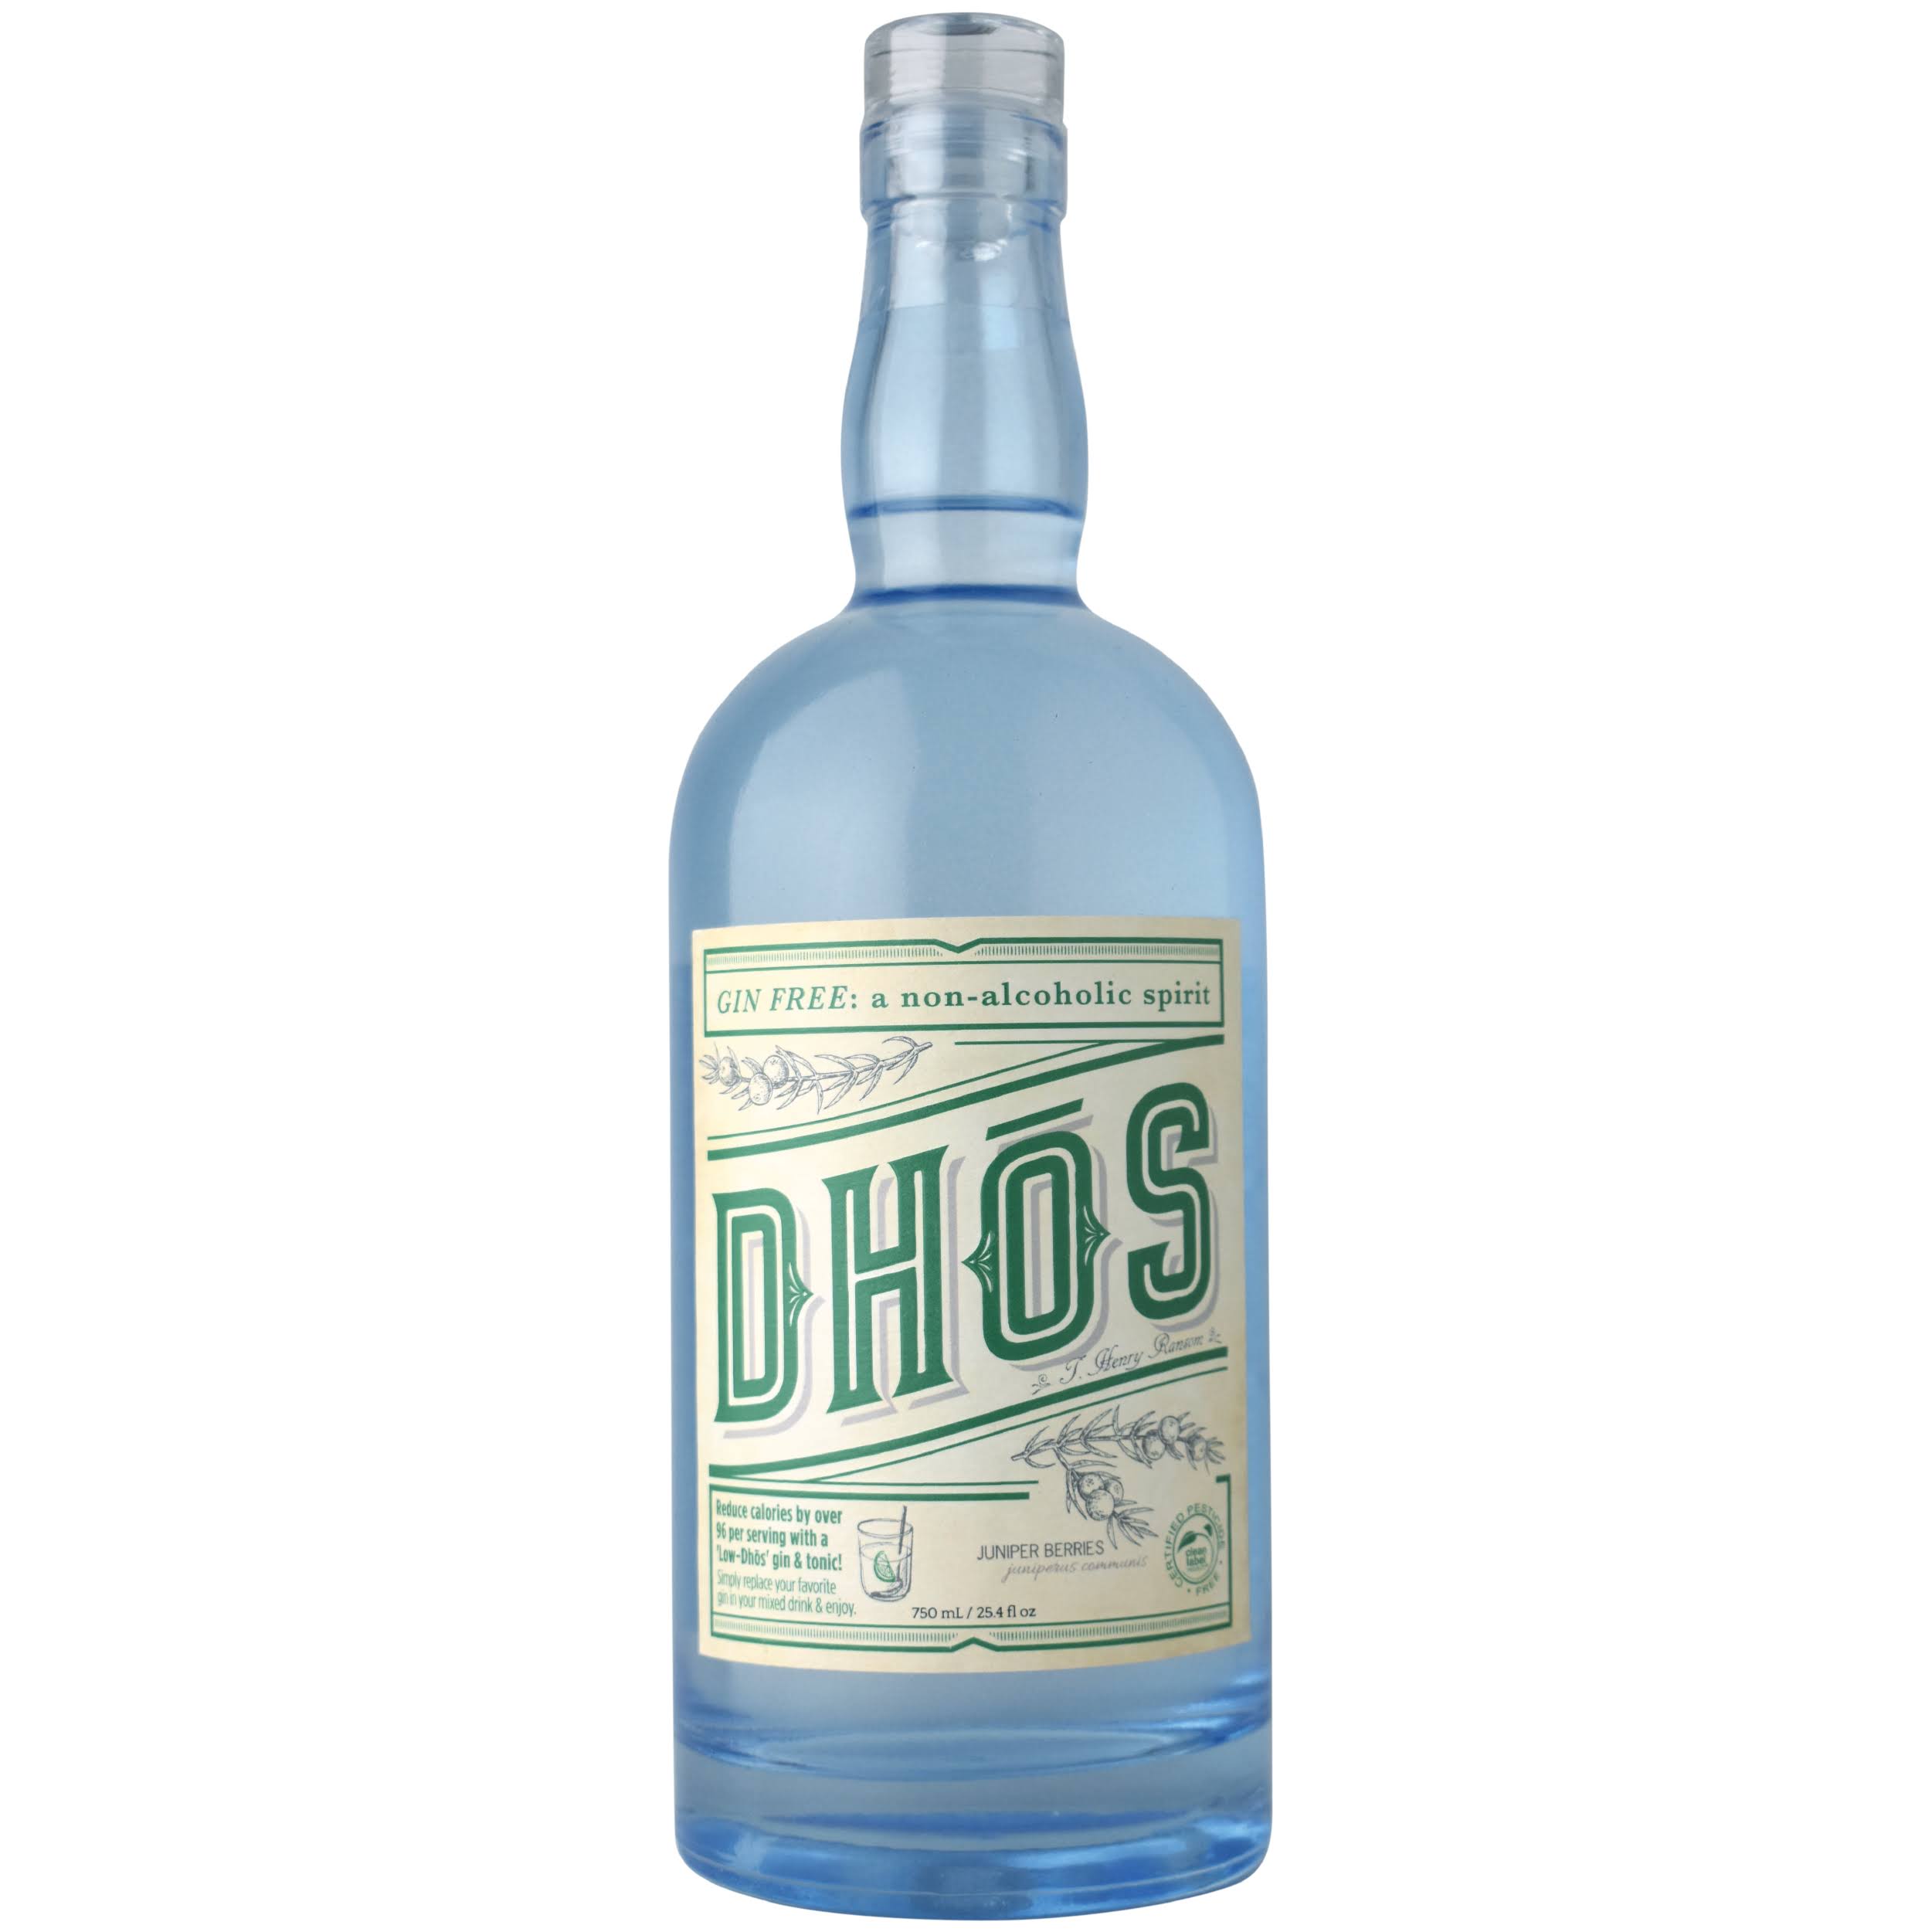 Dhos Gin Free Non-Alcoholic Spirit - 750 ml